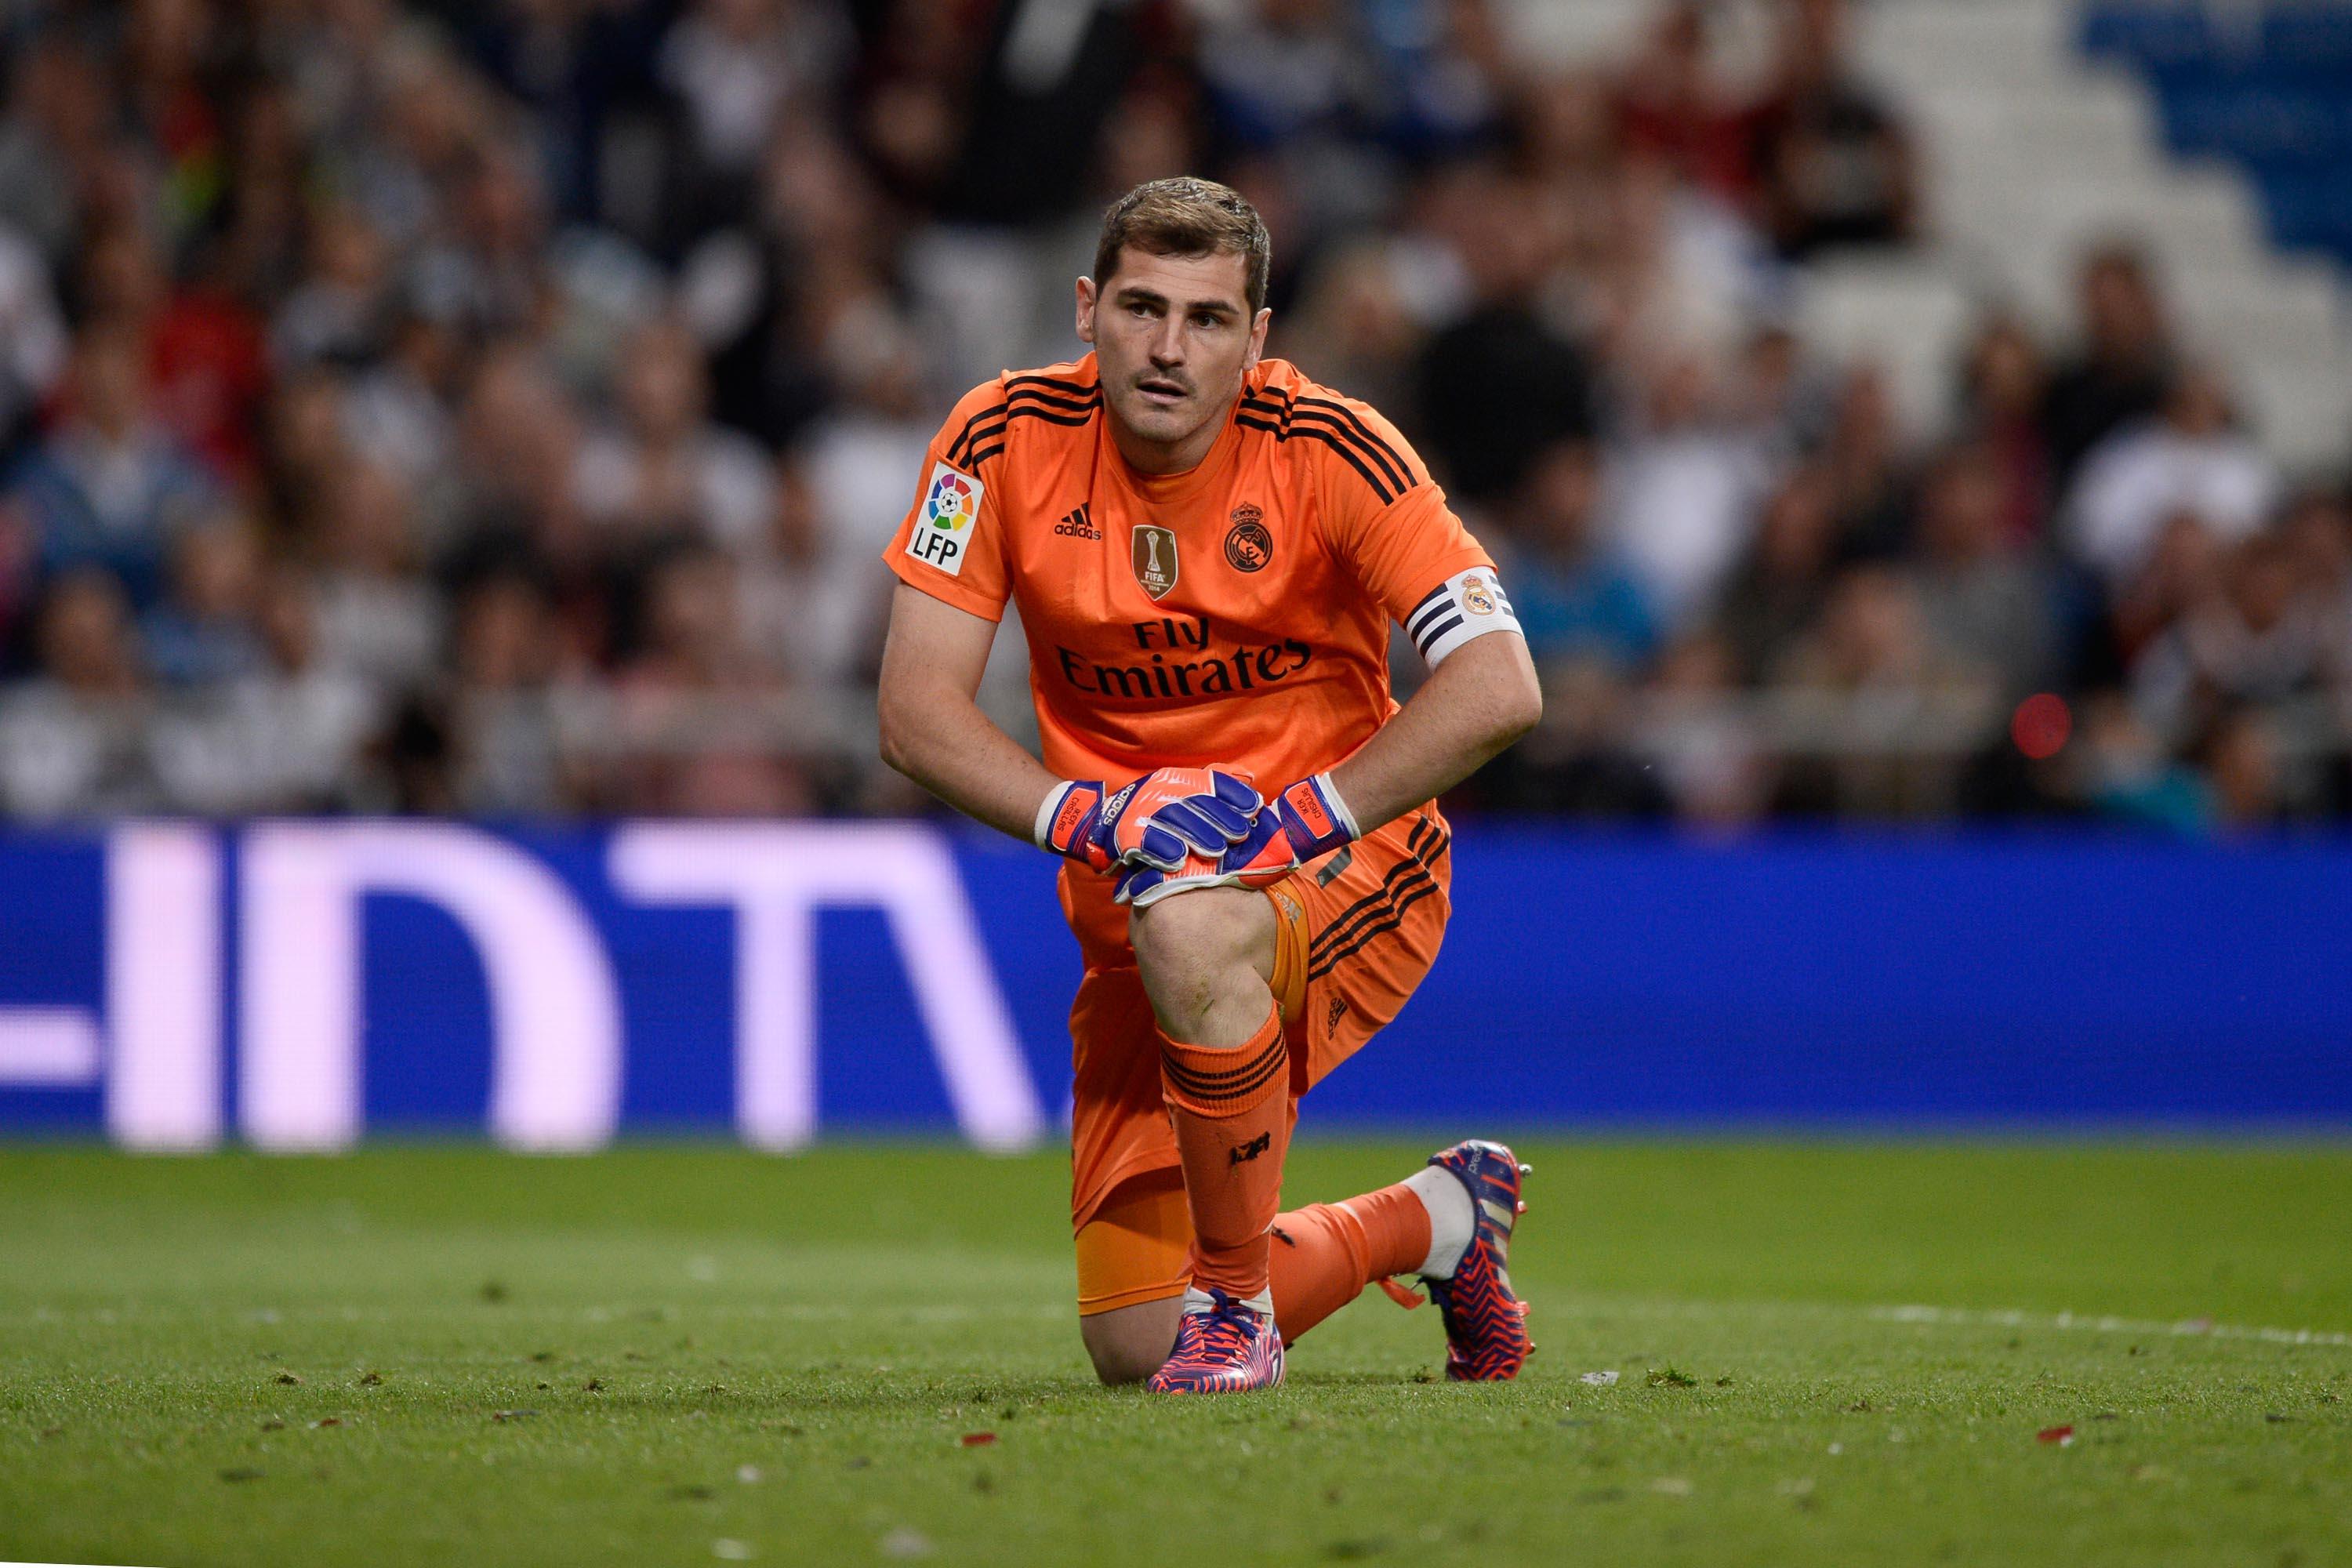 Iker_Casillas_Real_Madrid_b10bfa3917.jpeg